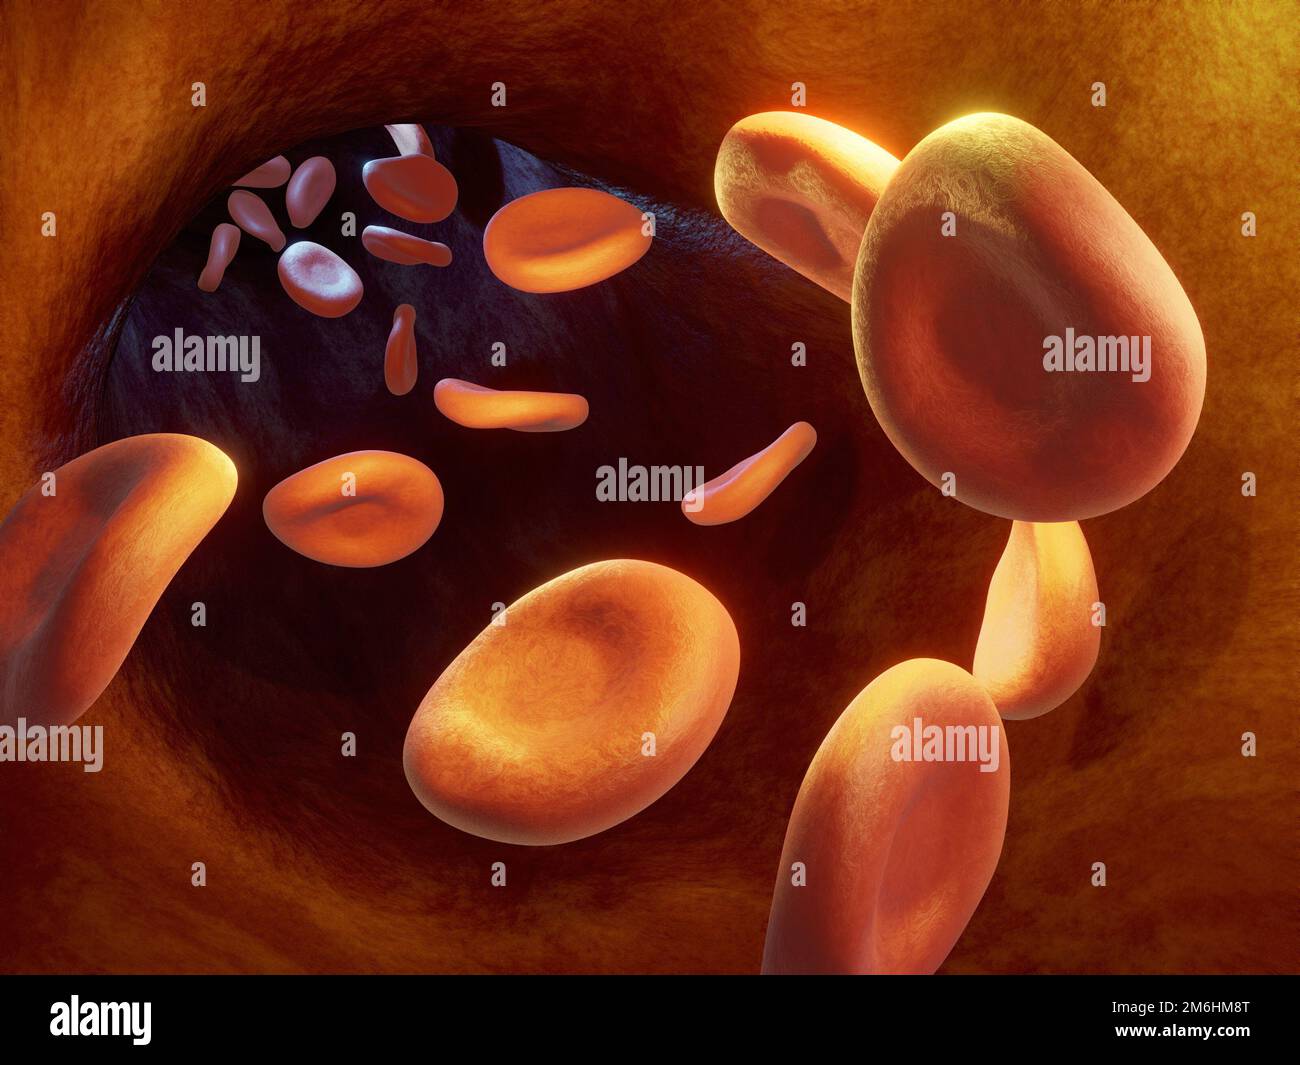 Gros plan de certaines cellules sanguines de l'humna à l'intérieur d'une veine. Illustration numérique, rendu 3D. Banque D'Images